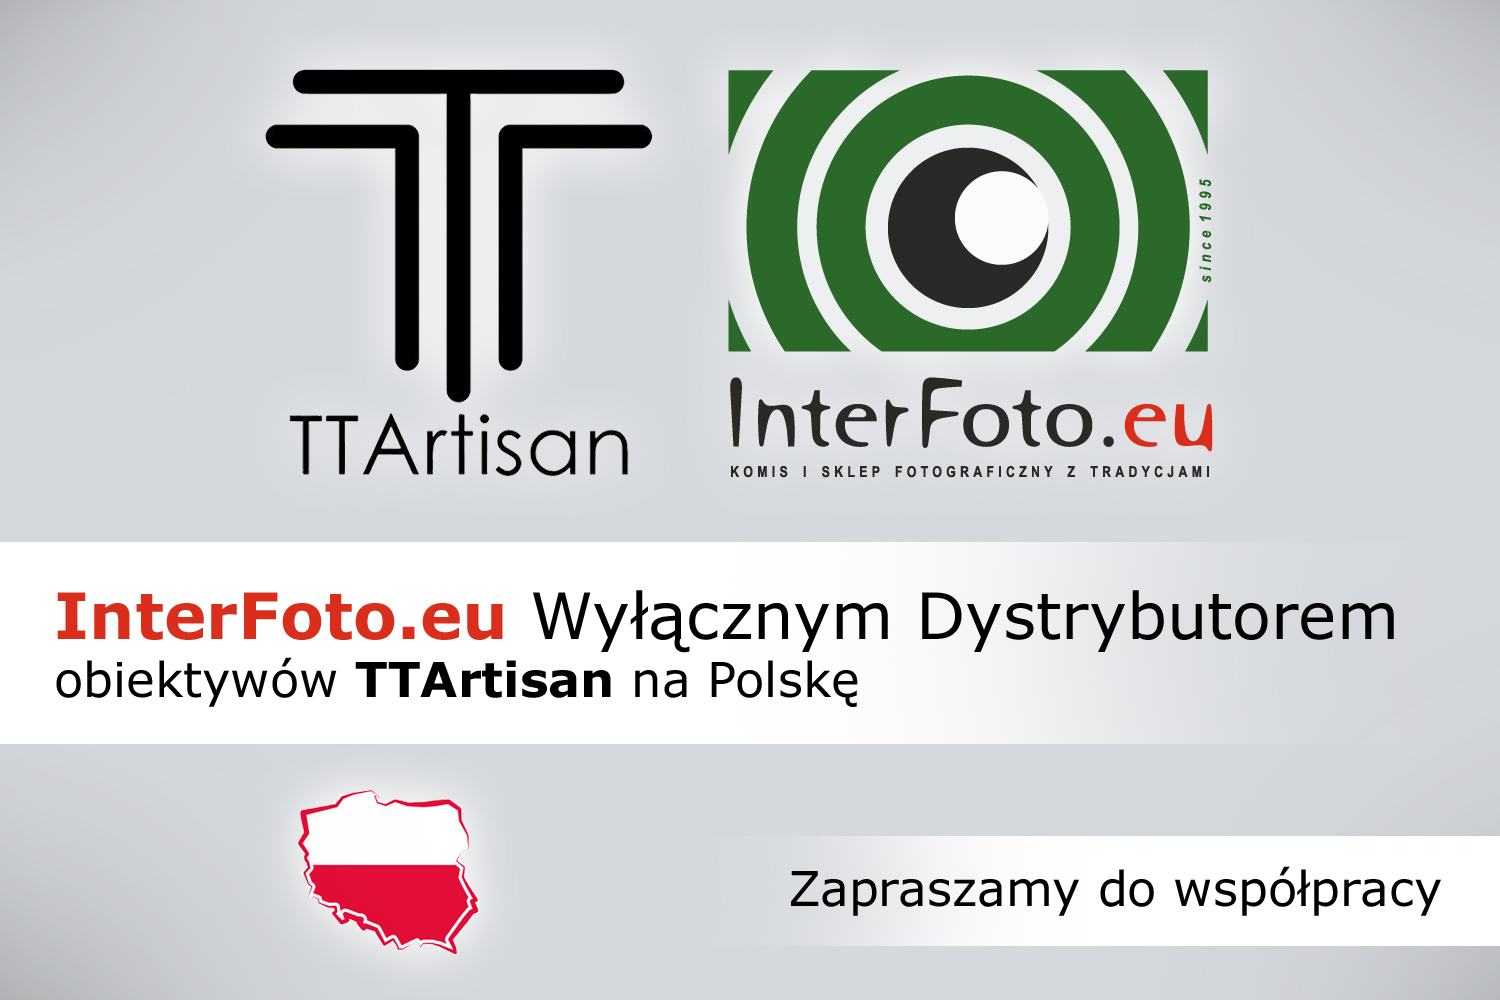 InterFoto.eu Wyłącznym Dystrybutorem obiektywów TTArtisan na Polskę